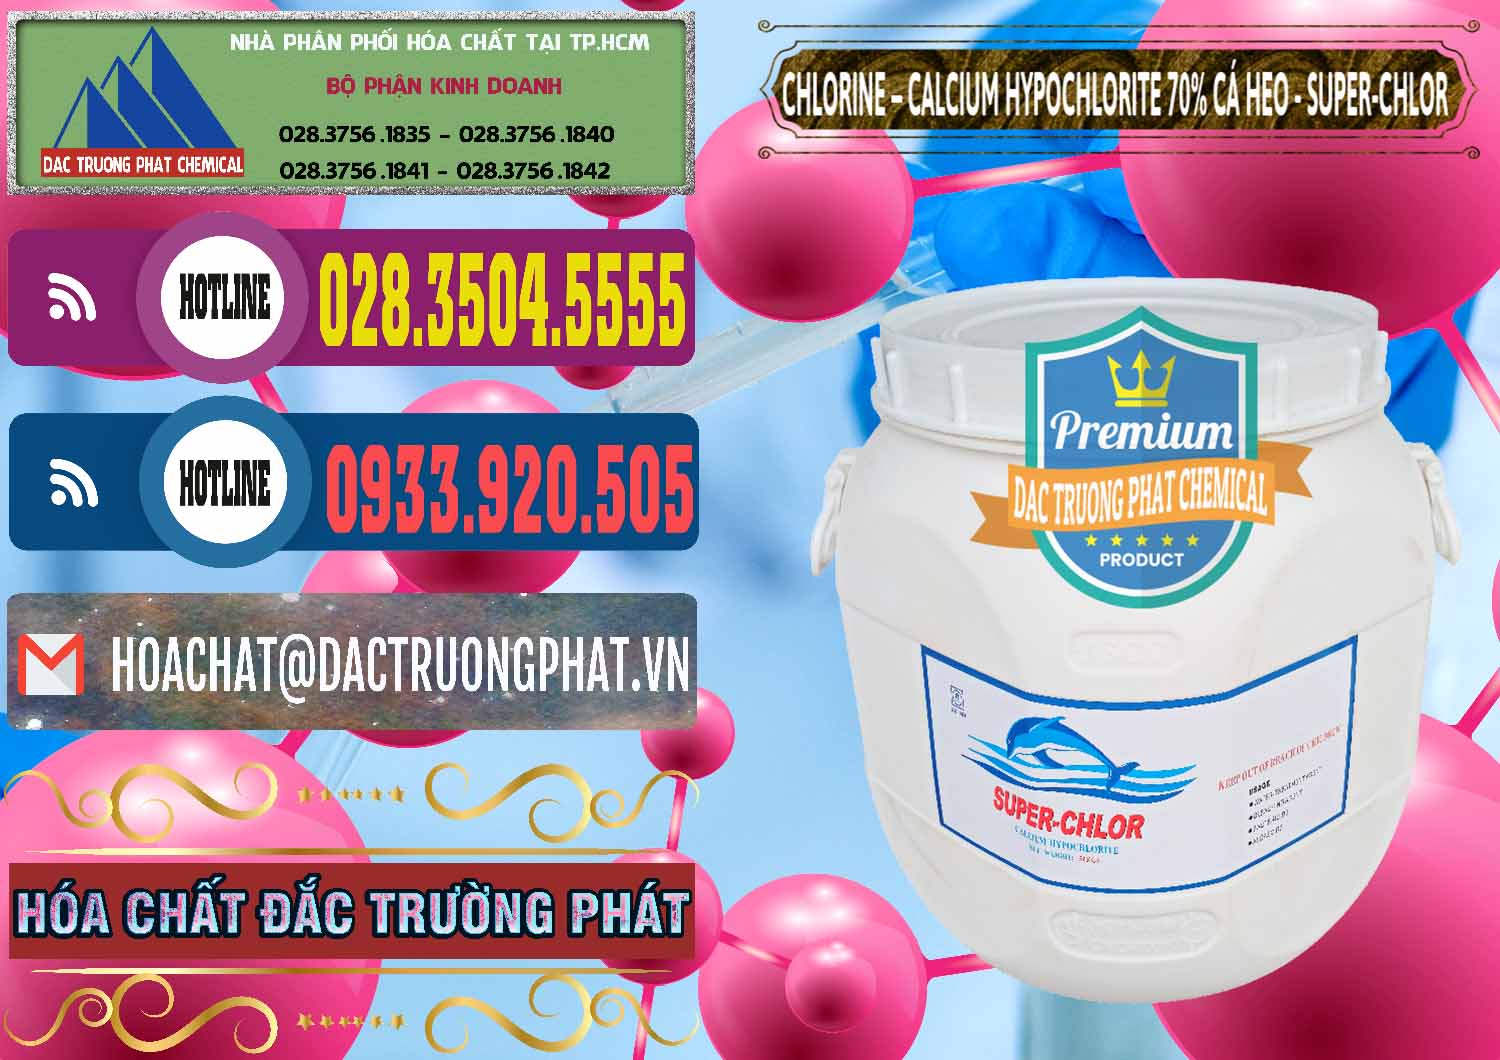 Công ty chuyên cung ứng _ bán Clorin - Chlorine Cá Heo 70% Super Chlor Trung Quốc China - 0058 - Cty bán _ cung cấp hóa chất tại TP.HCM - muabanhoachat.com.vn